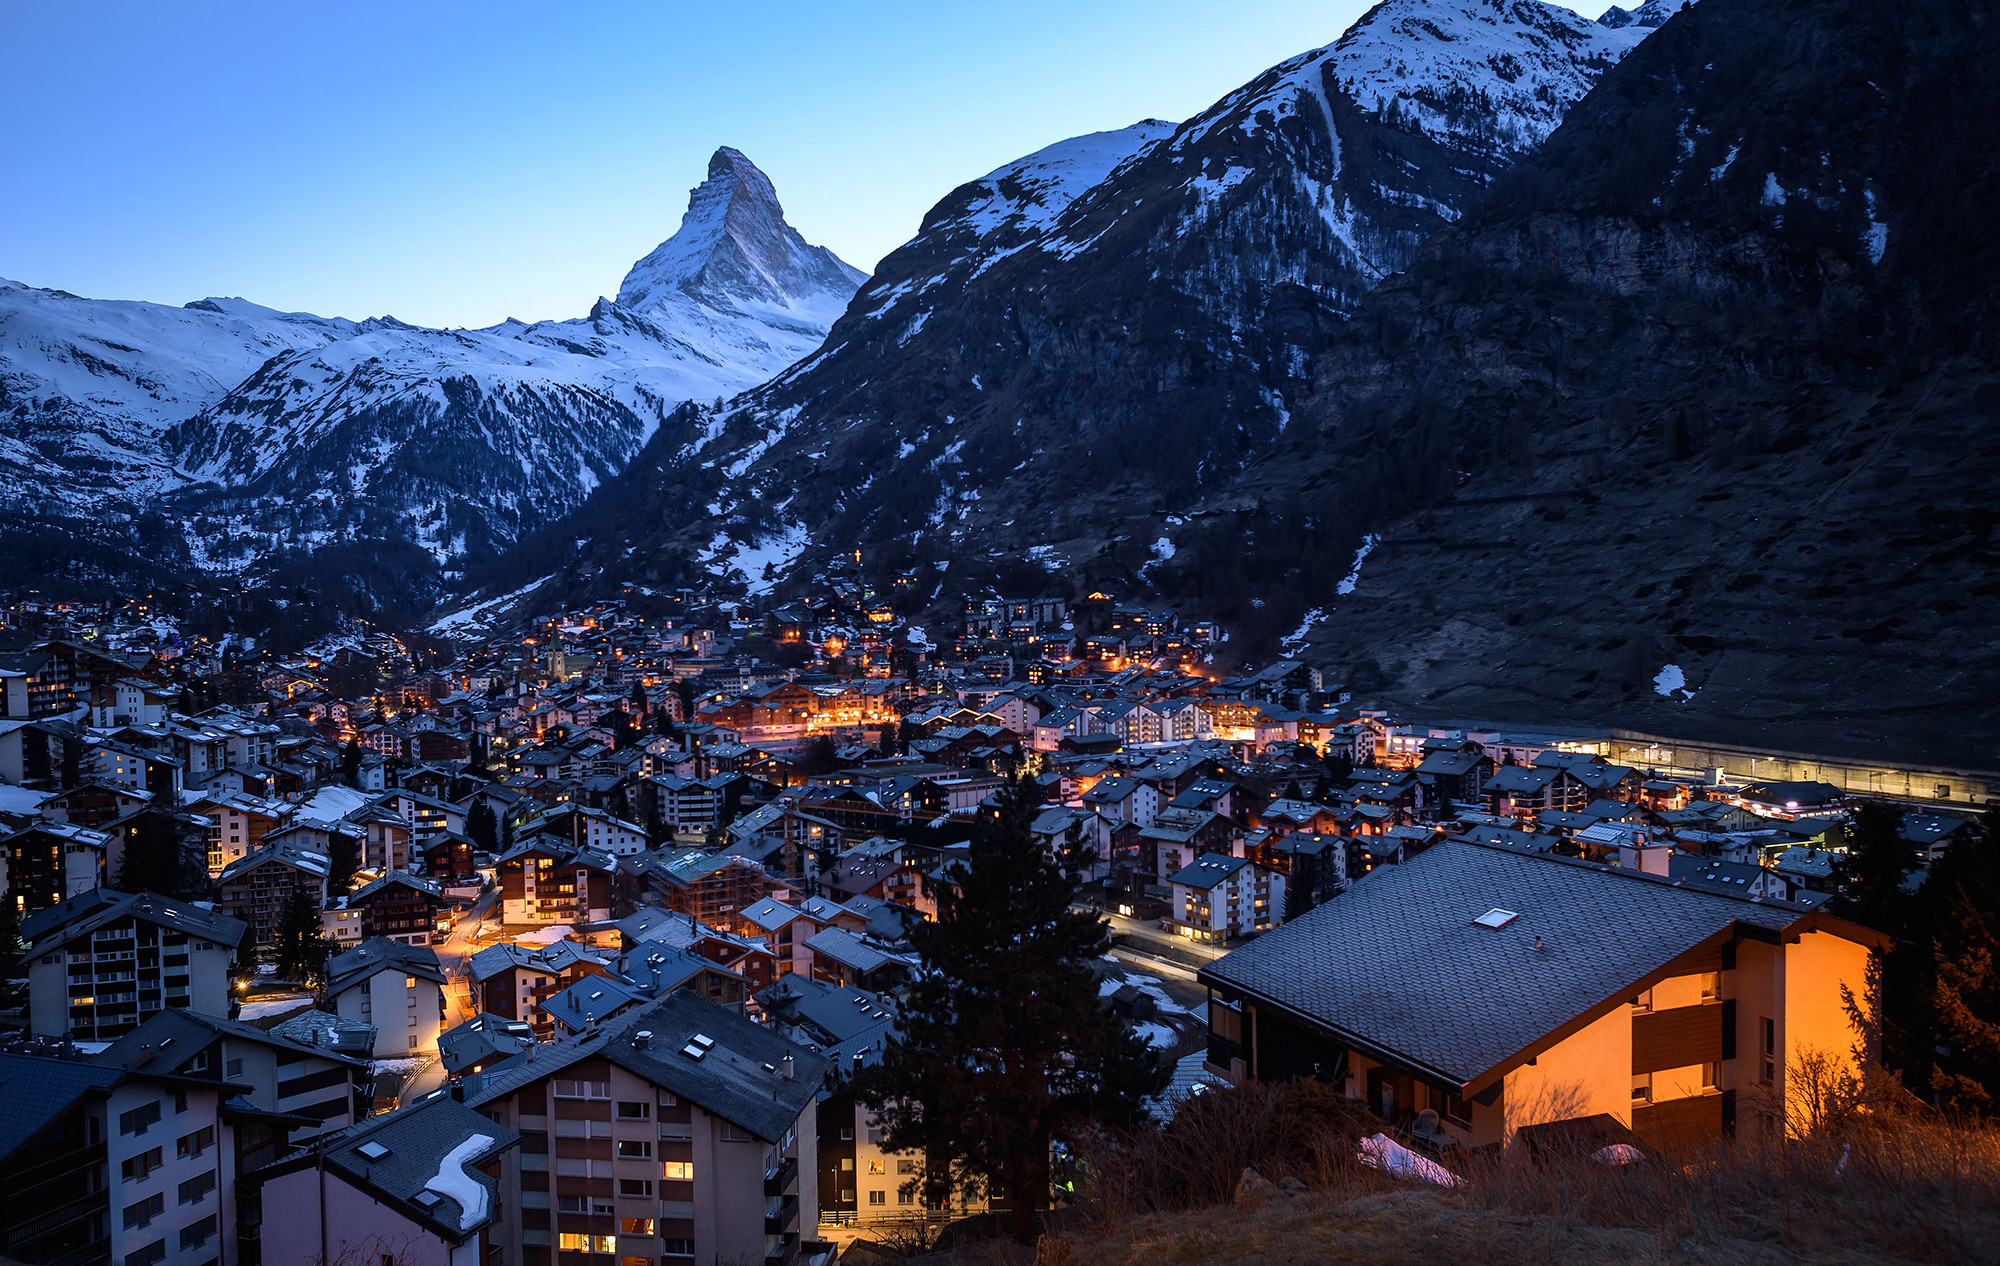 The Swiss alpine resort of Zermatt, ski destination of Klyushin and family.